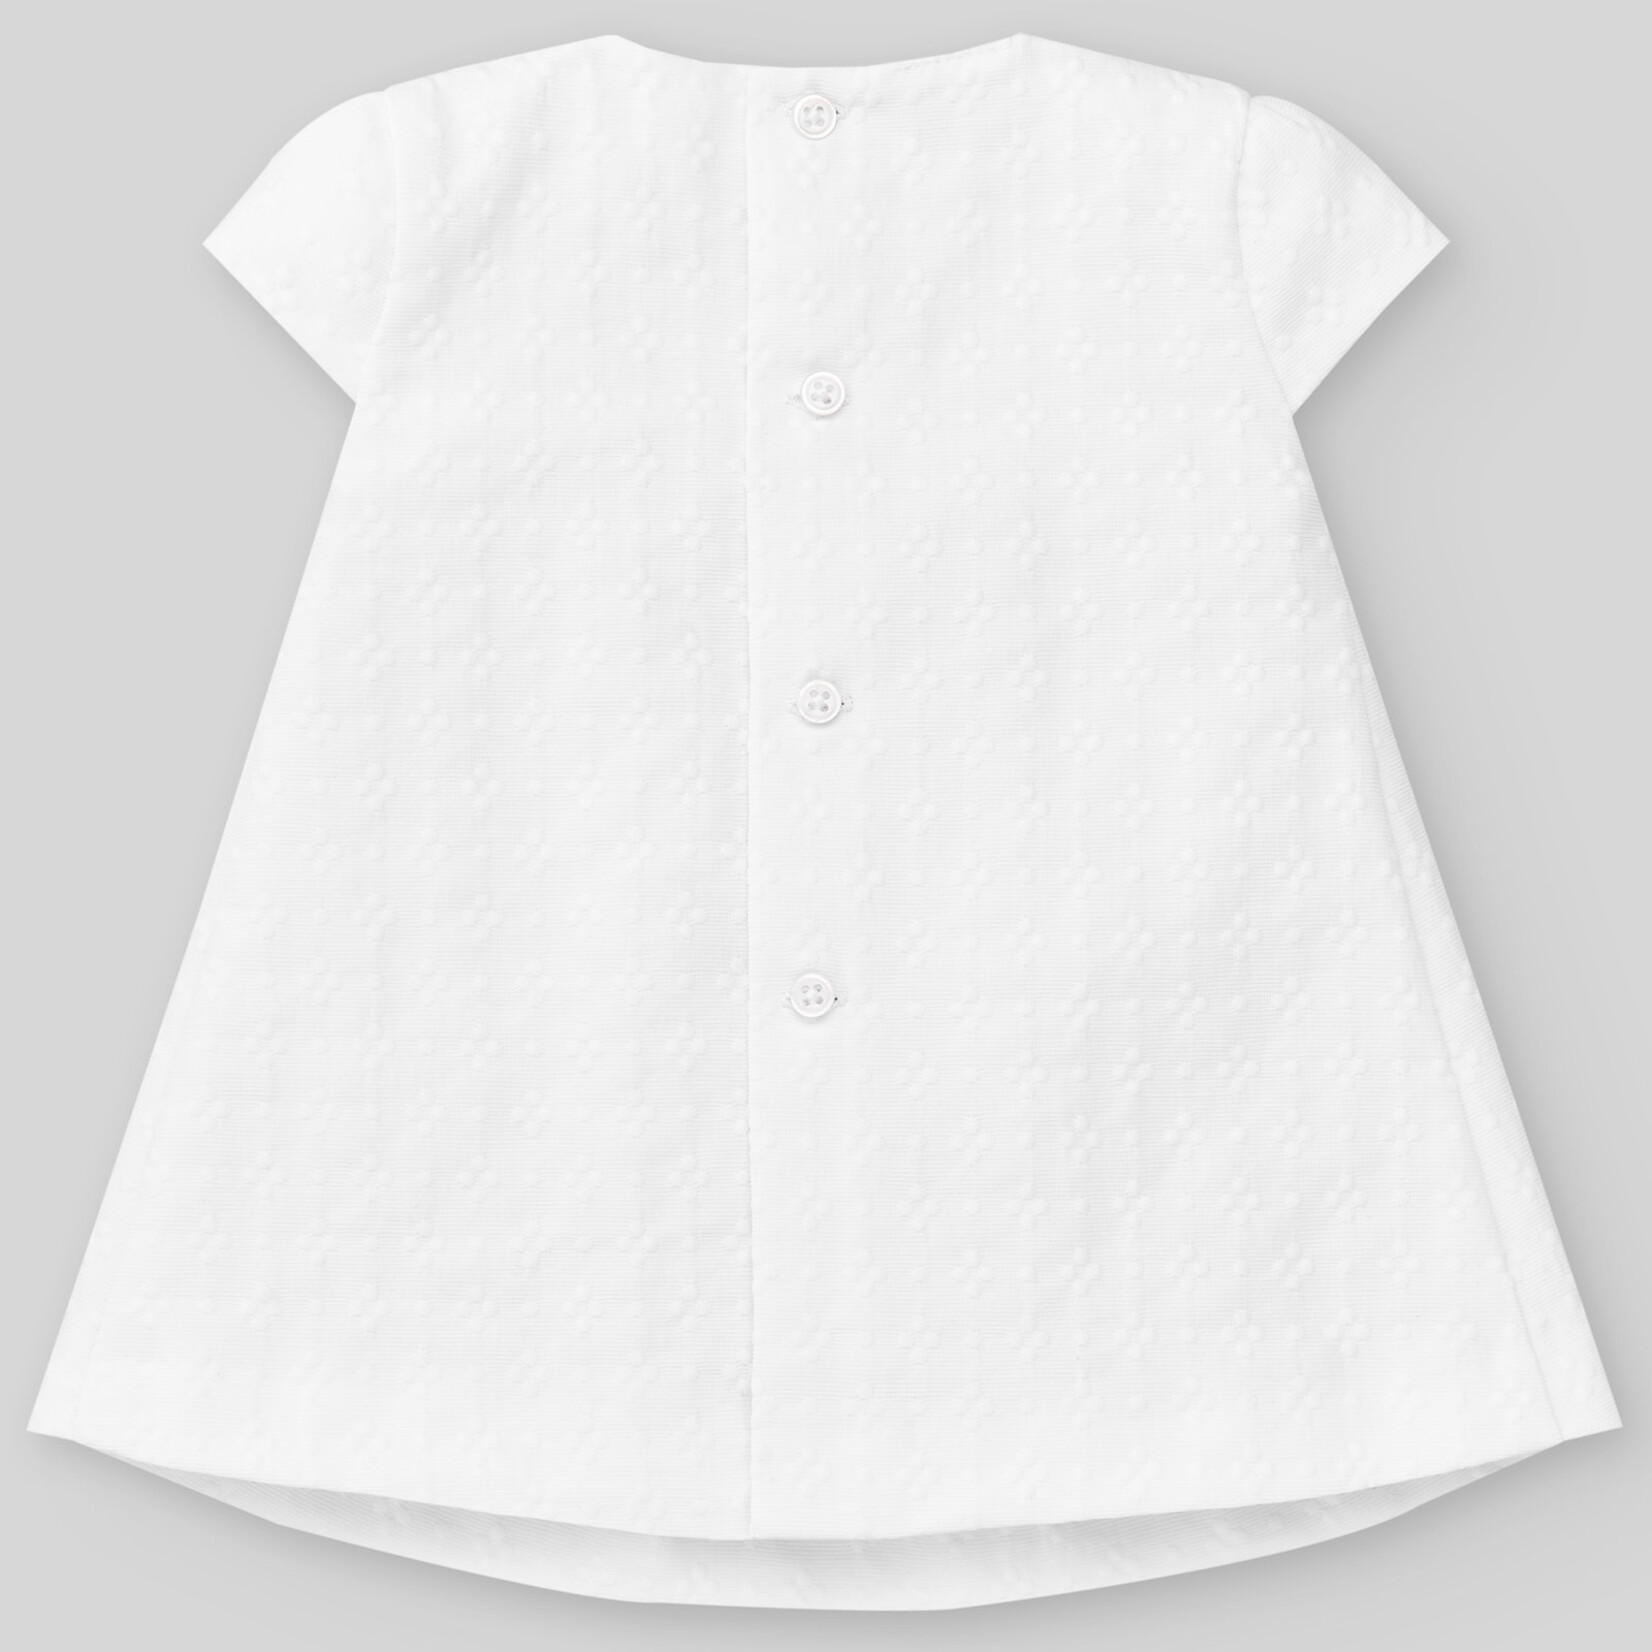 Paz Rodriguez WOVEN NEWBORN DRESS "AURA"_White/Chalk Pink_0137